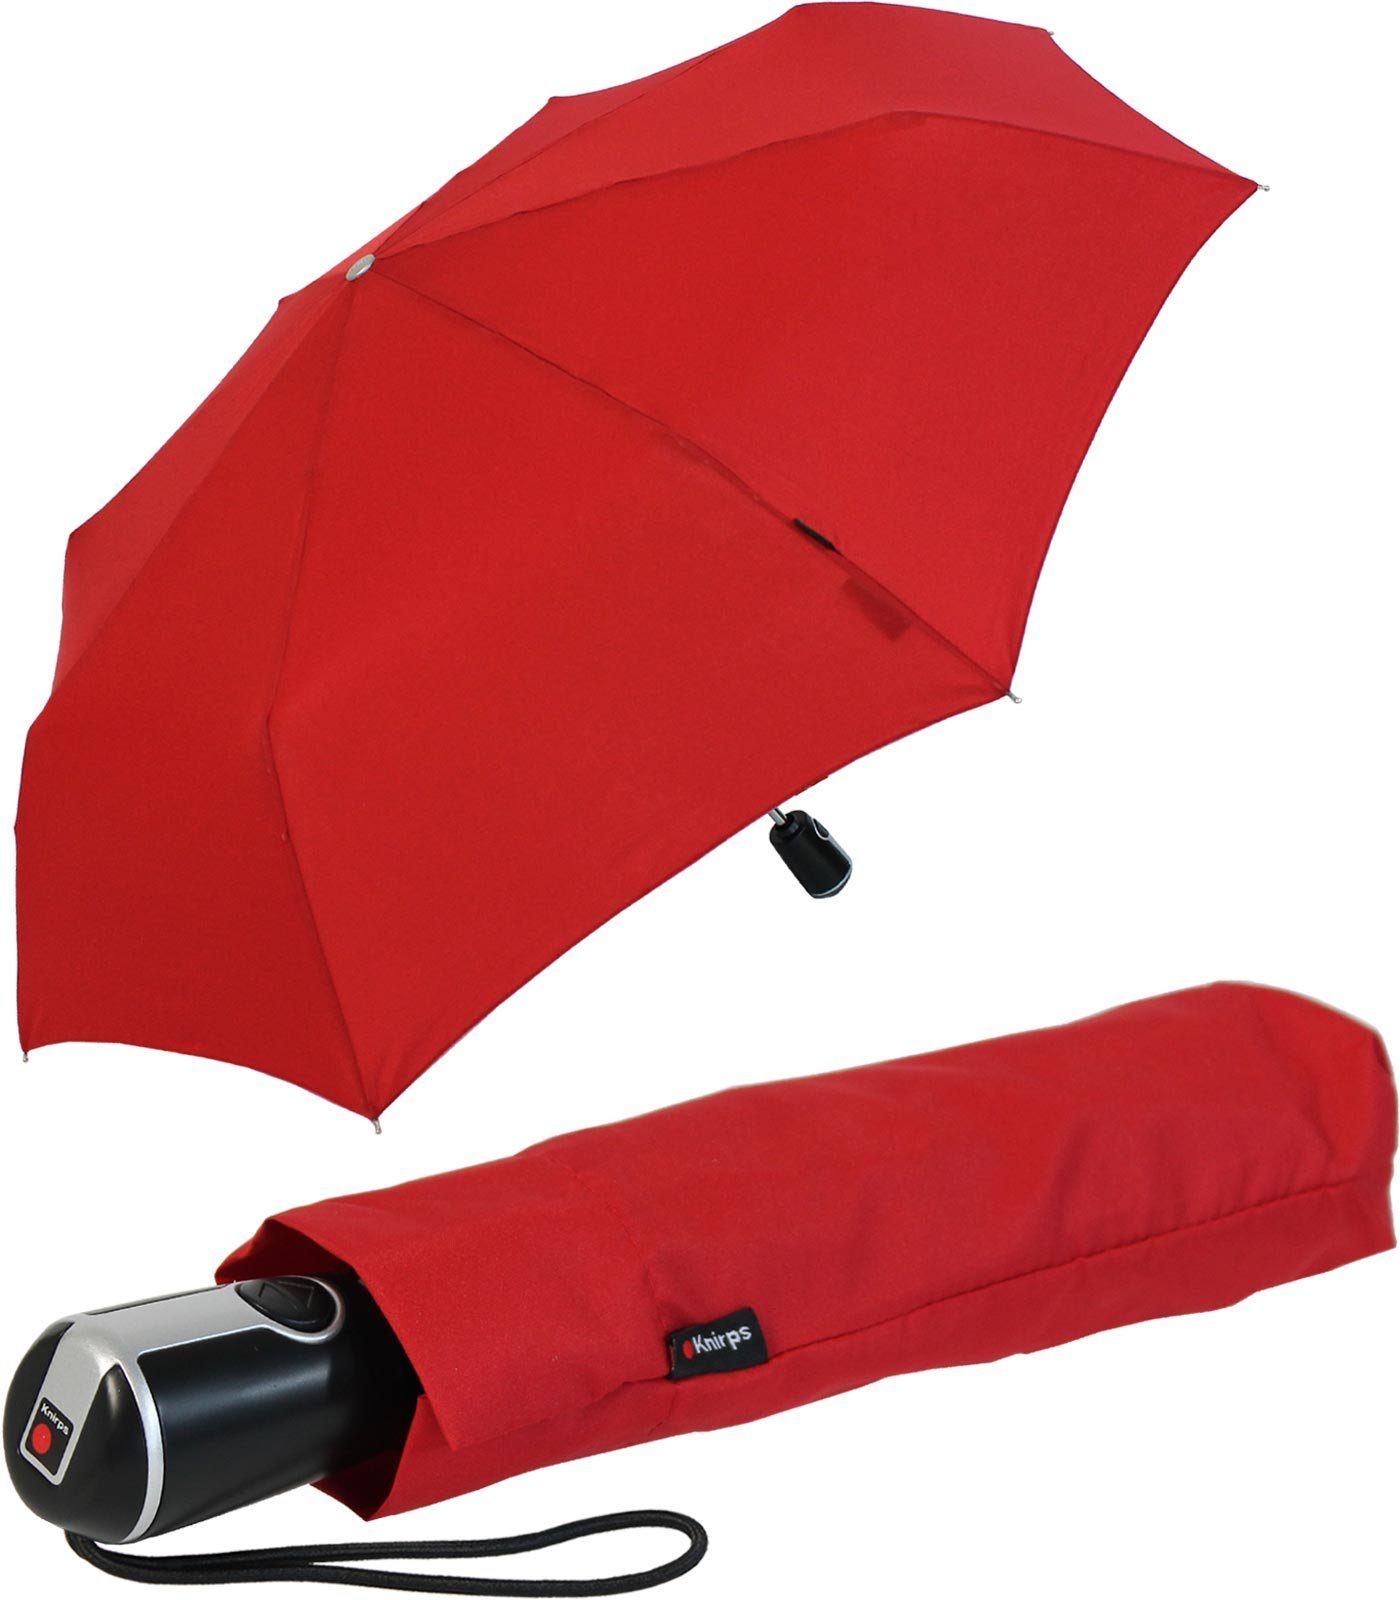 Duomatic Taschenregenschirm große, Begleiter mit stabile der Auf-Zu-Automatik, Knirps® rot Large